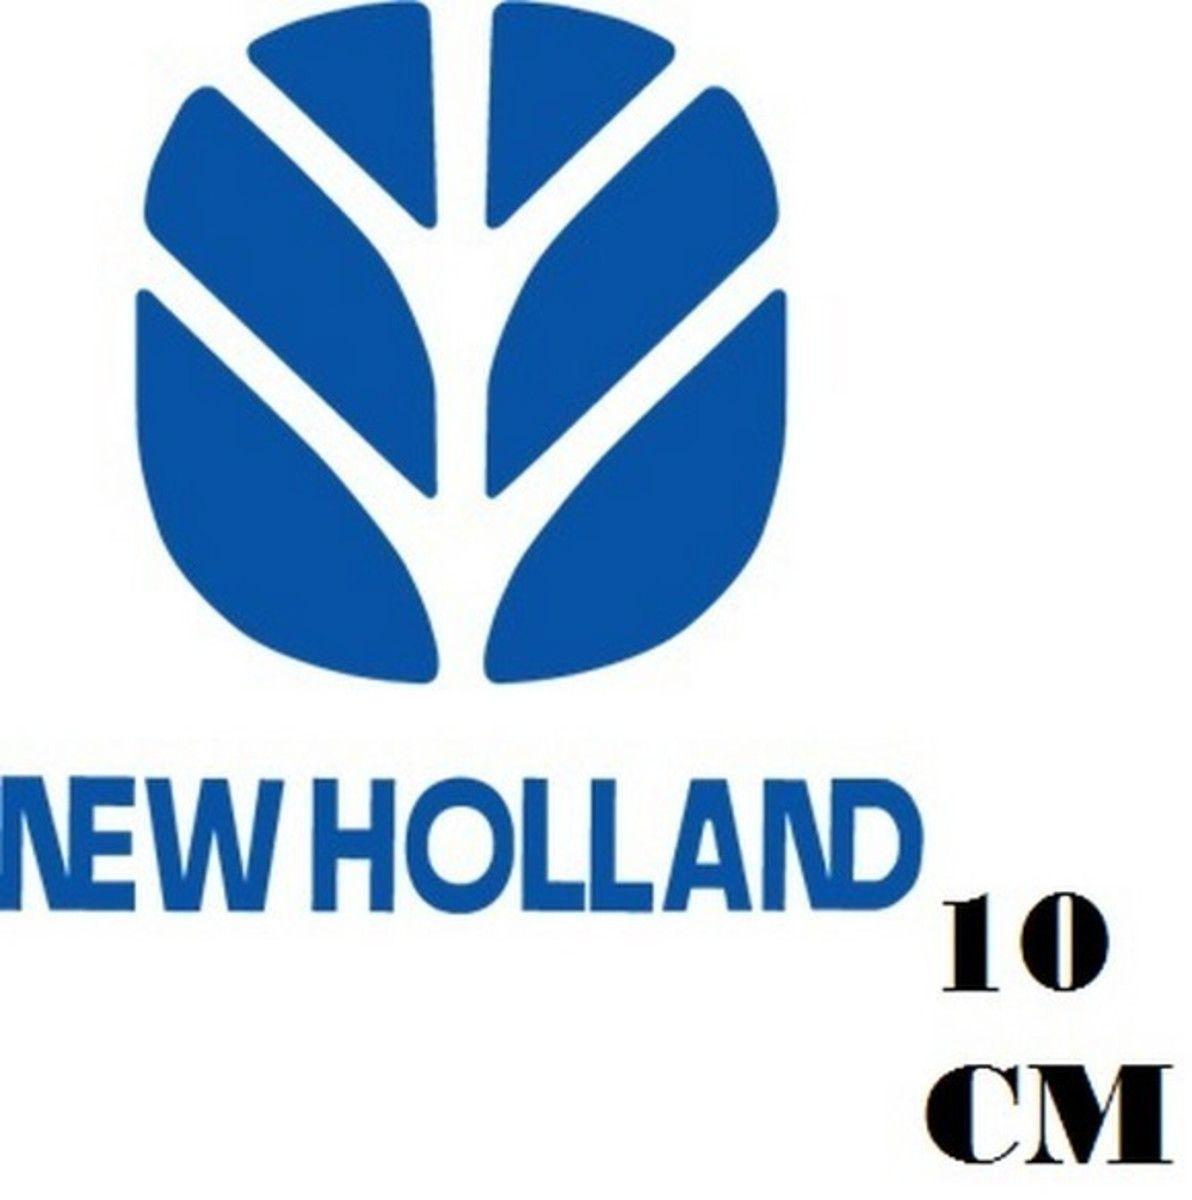 New Holland Logo - Adesivo Logo New Holland Frete Grátis no Elo7. STICKER KING (CE96C2)